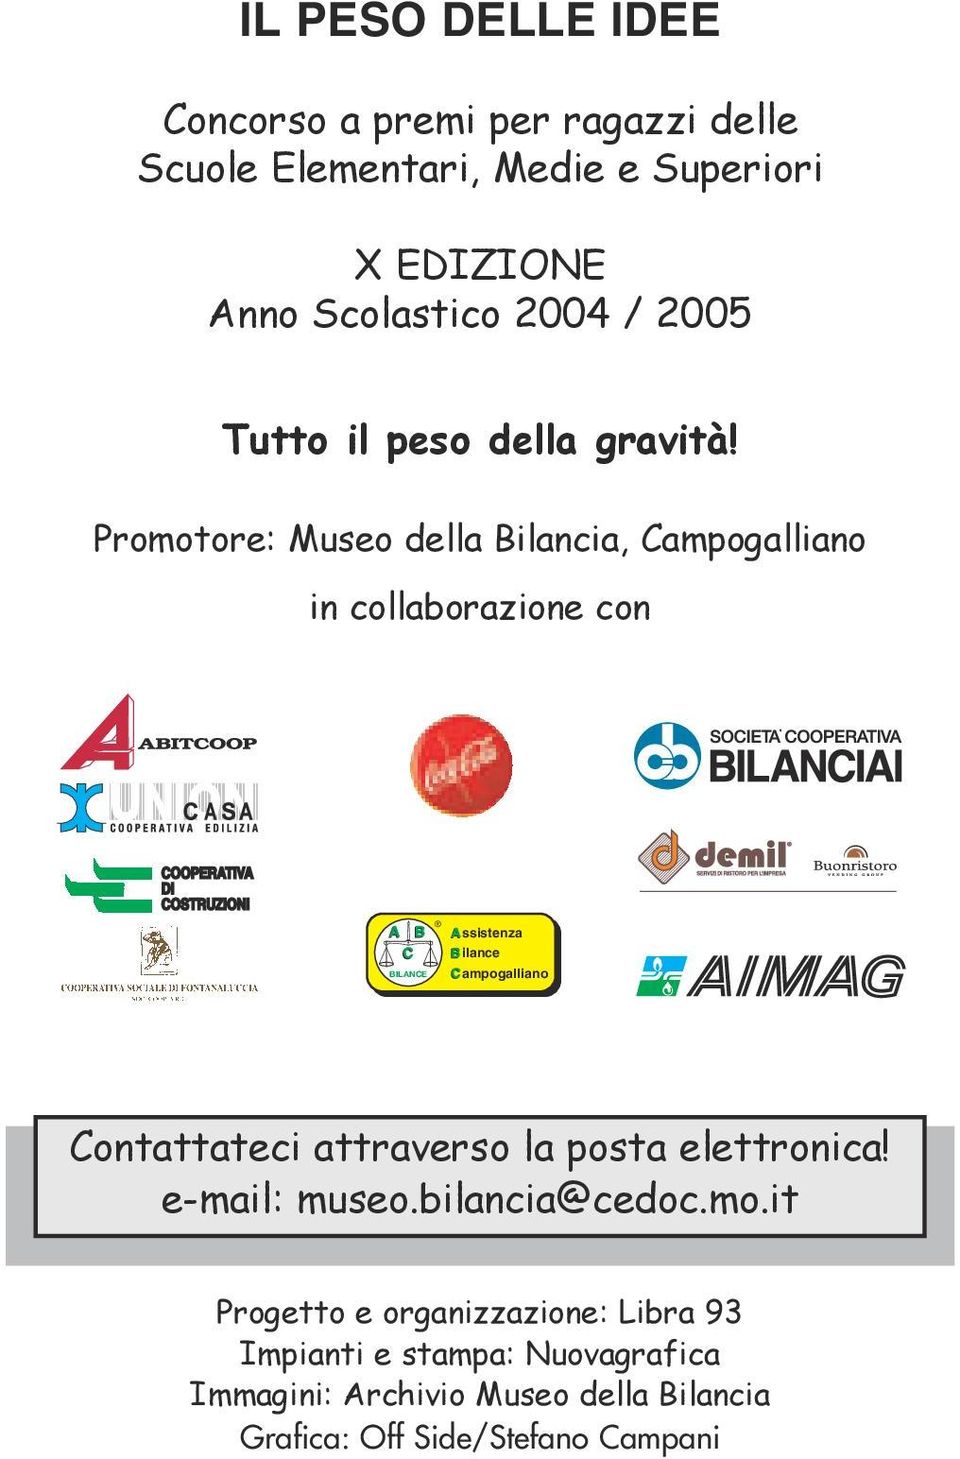 Promotore: Museo della Bilancia, Campogalliano in collaborazione con BILANCE ssistenza ilance ampogalliano Contattateci